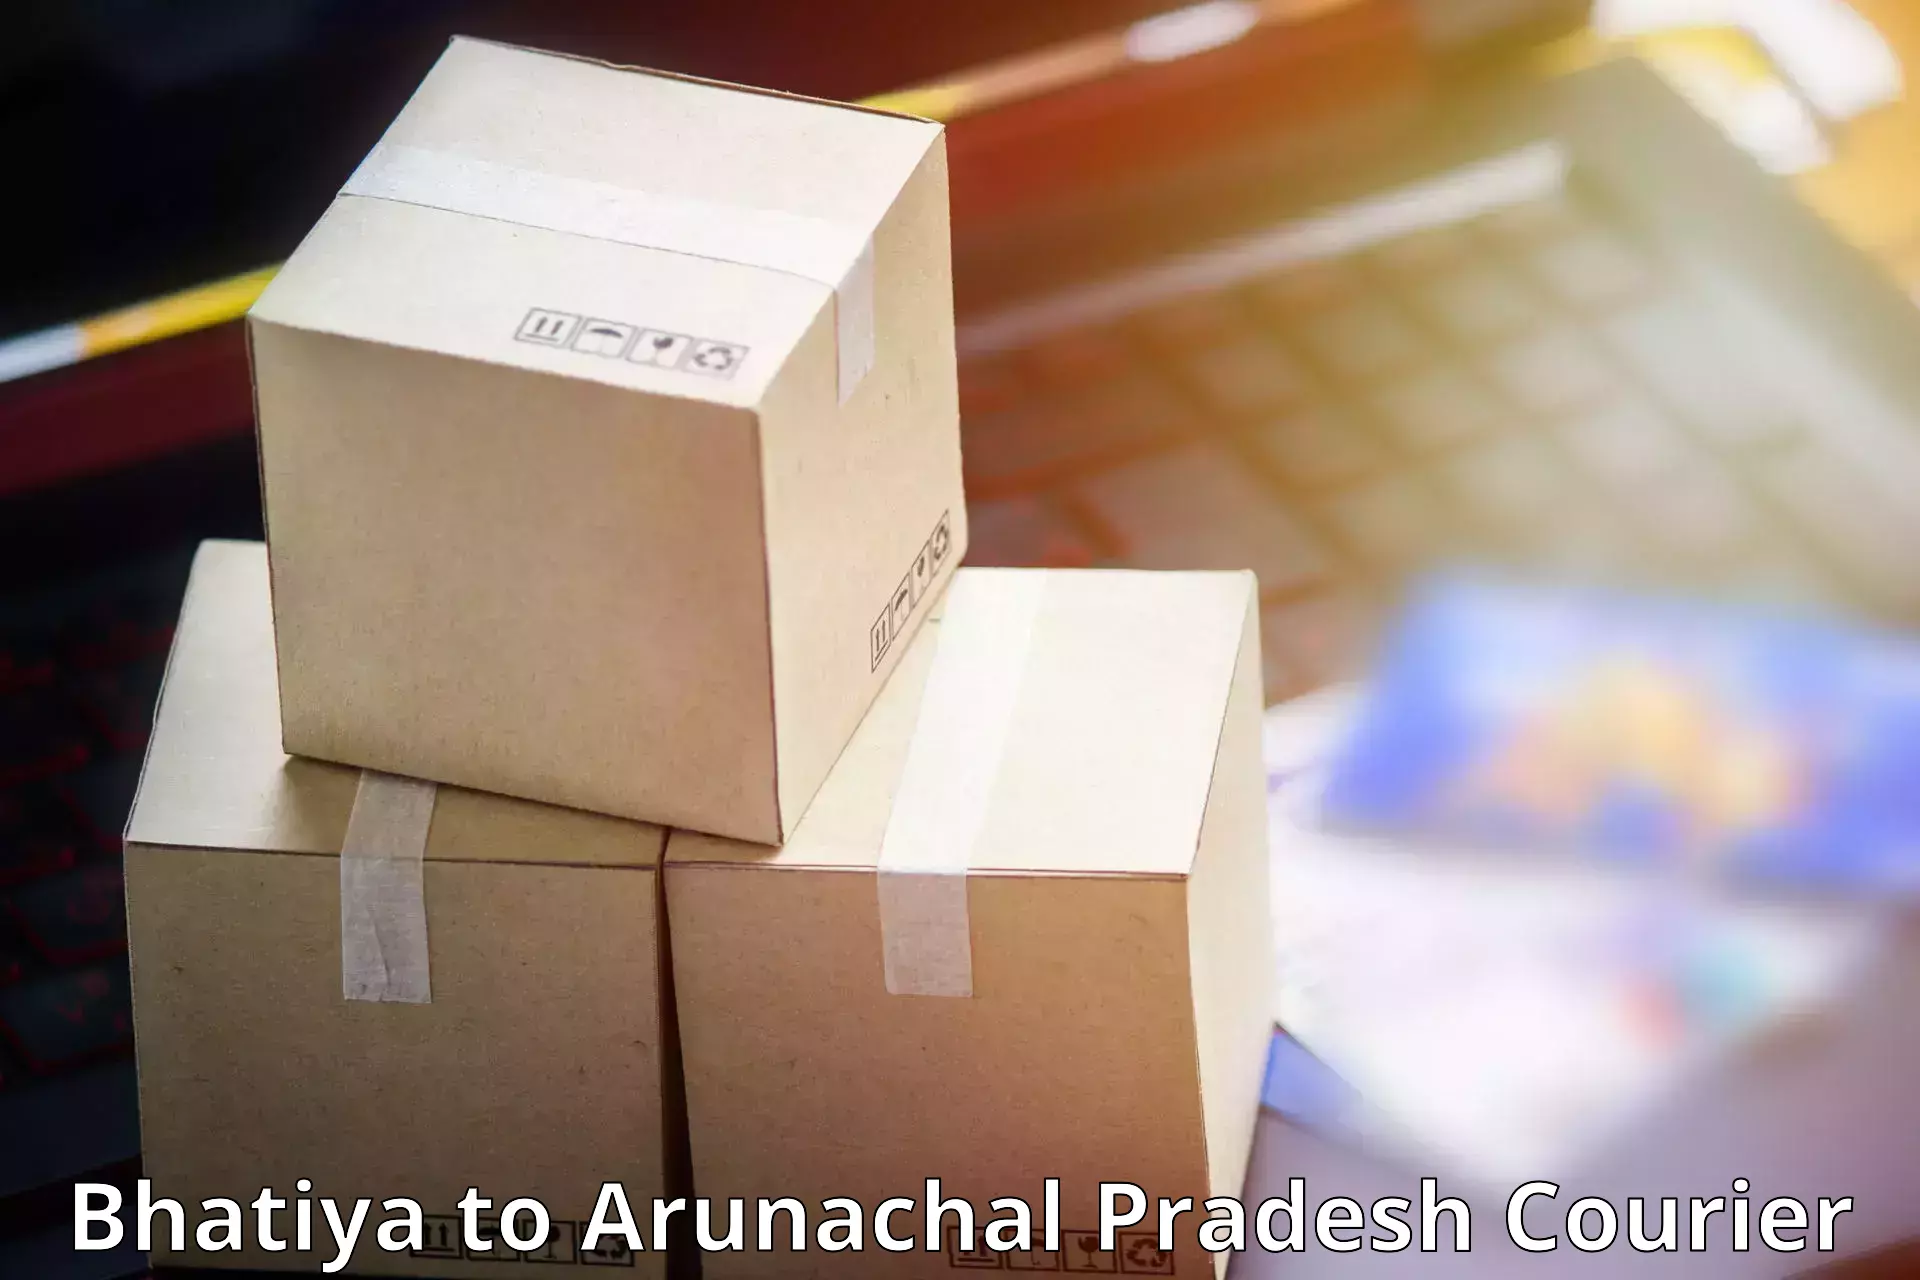 High-capacity parcel service Bhatiya to Dibang Valley